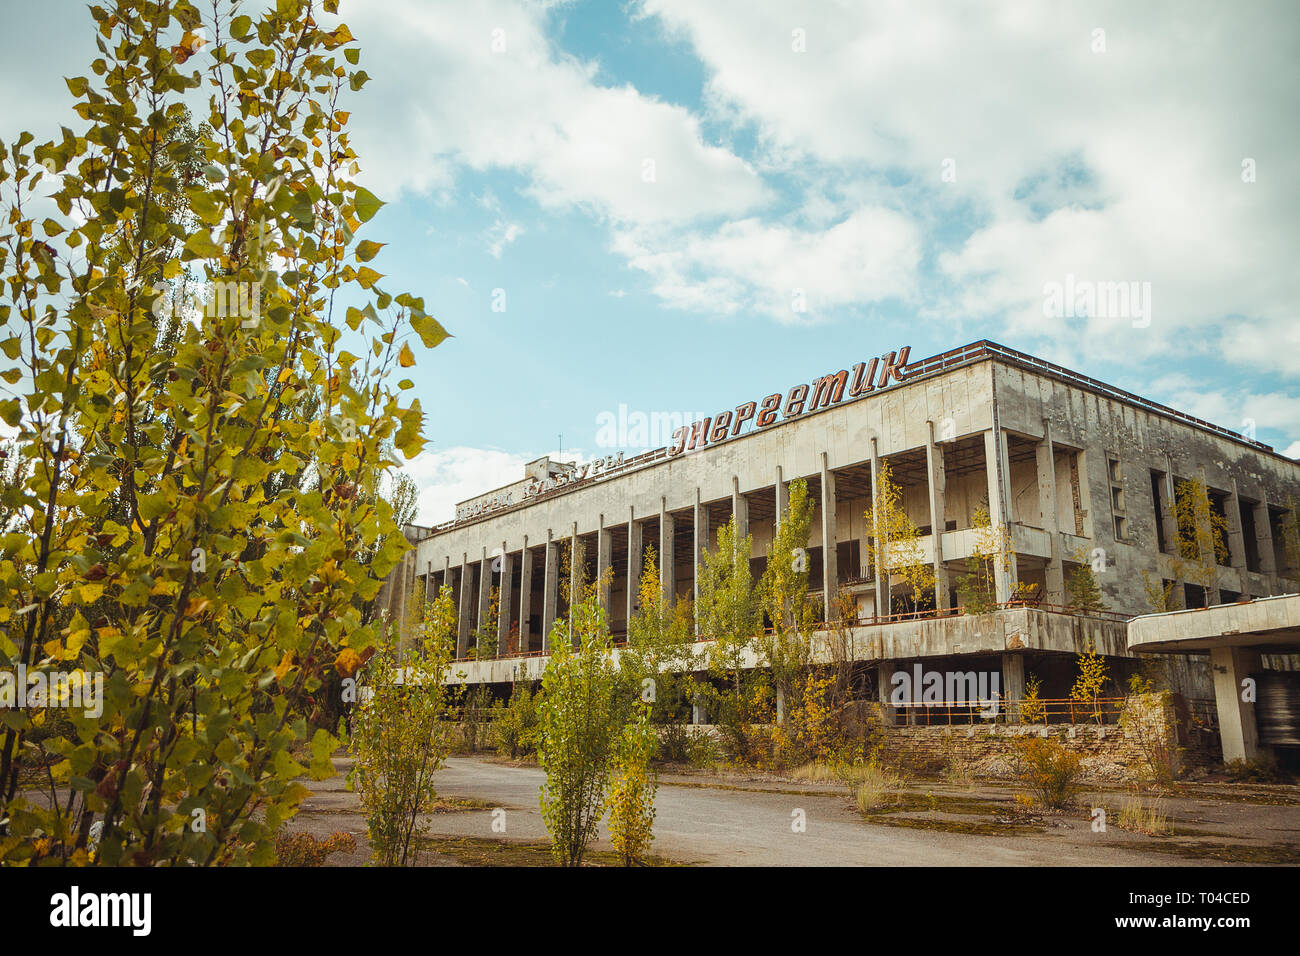 Palast der Kultur Energetische in Tschernobyl Sperrzone. Radioaktive Zone in der Stadt Pripyat - verlassene Geisterstadt. Die Geschichte der Katastrophe von Tschernobyl Stockfoto